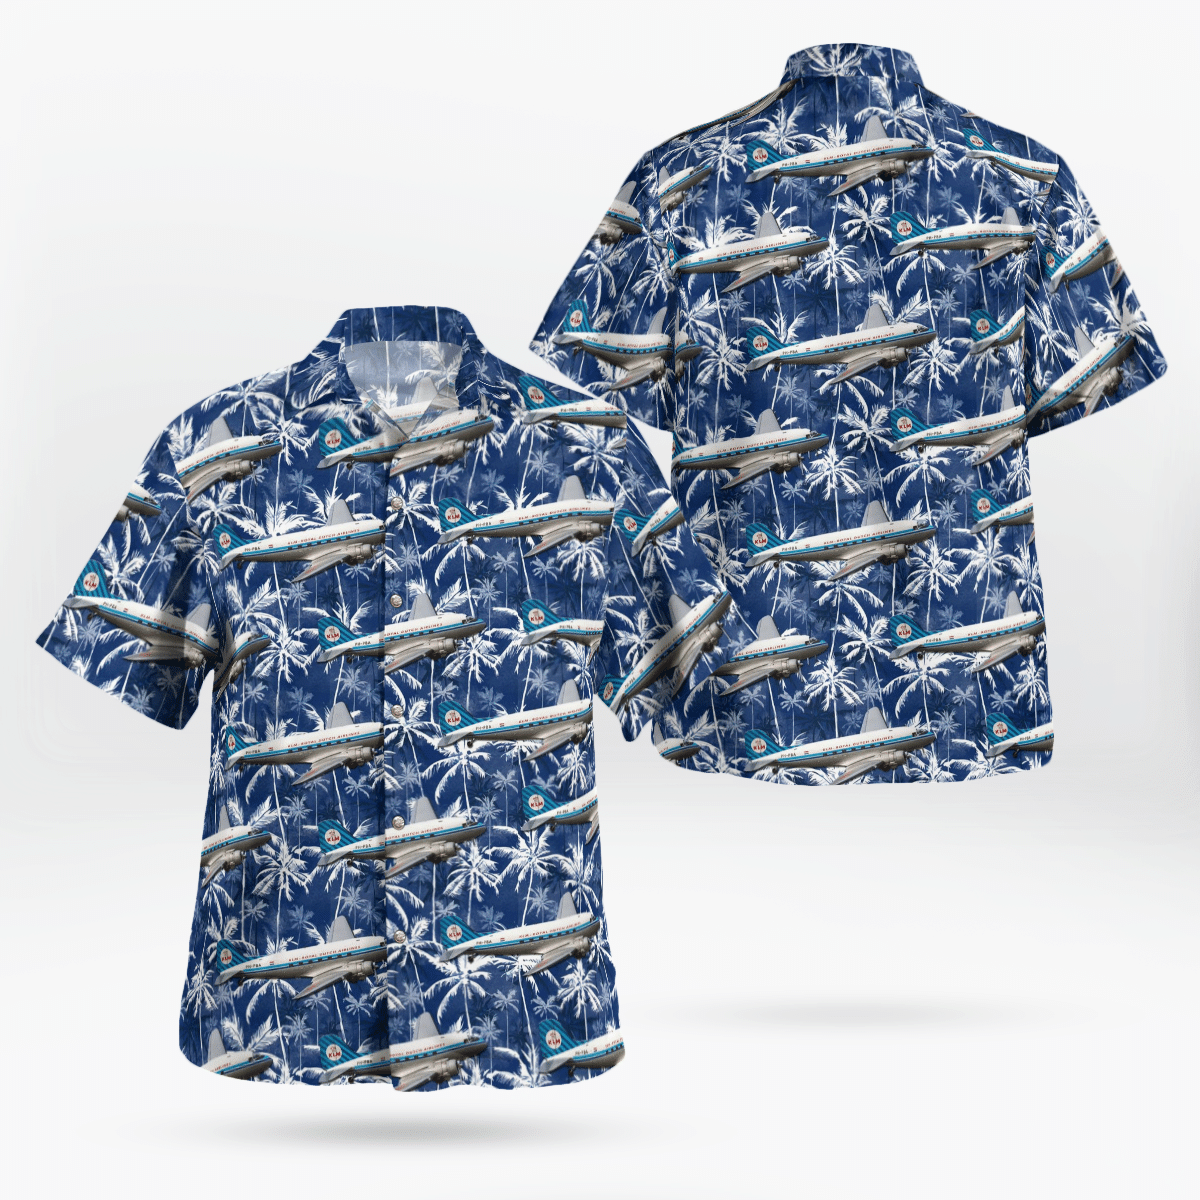 Best Hawaiian shirts 2022 251